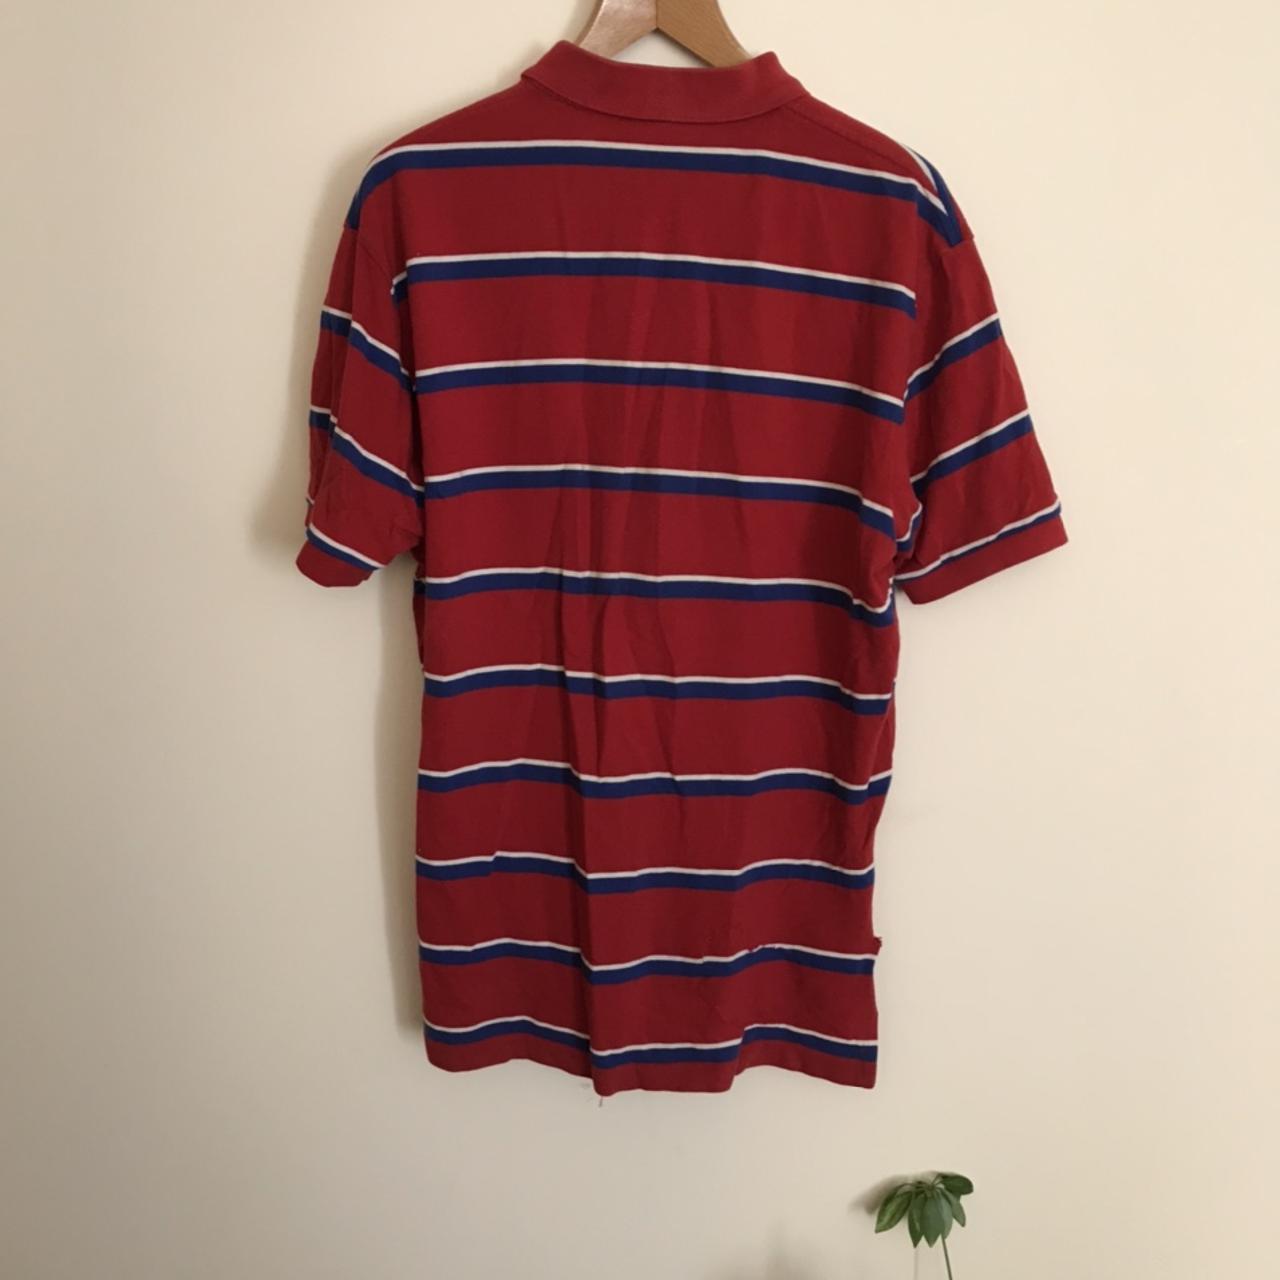 Ralph Lauren polo shirt size xl in good condition - Depop